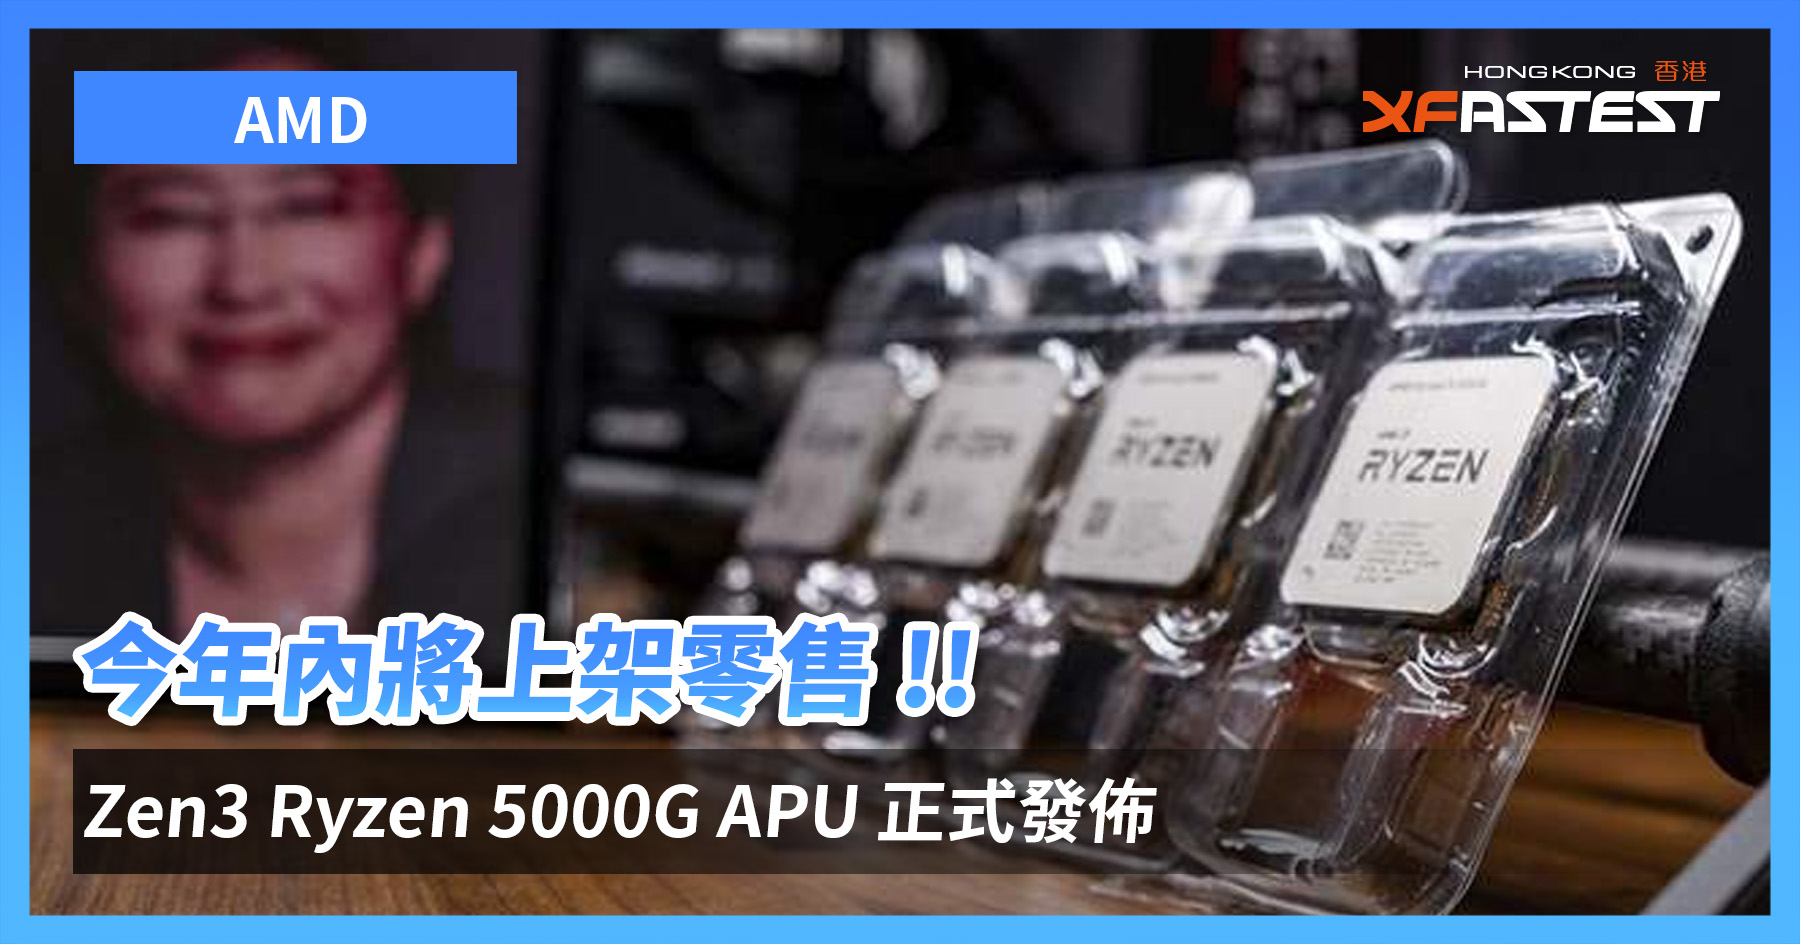 [情報] 今年內將上架零售 !! AMD Zen3 Ryzen 500